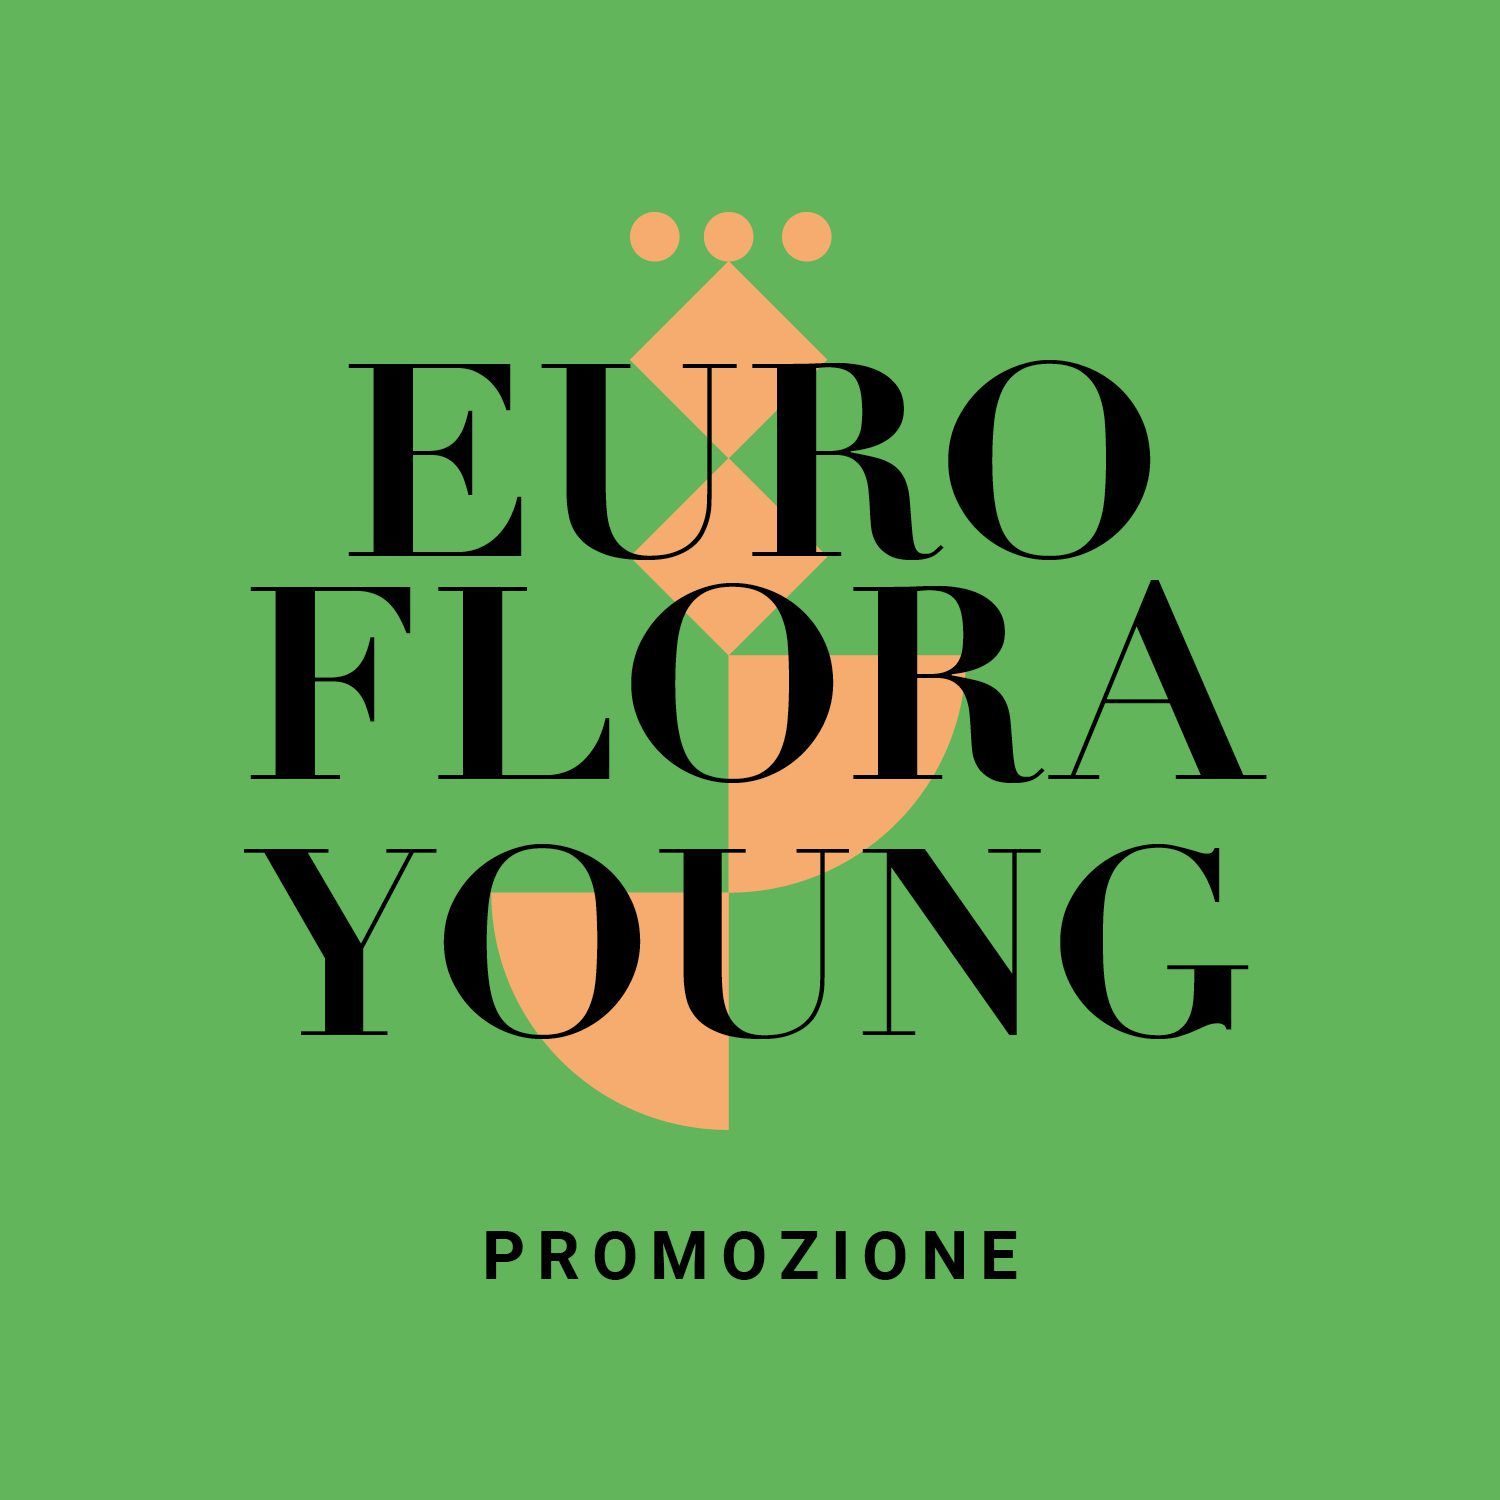 Euroflora Young promozione speciale ingresso a 10 Euro